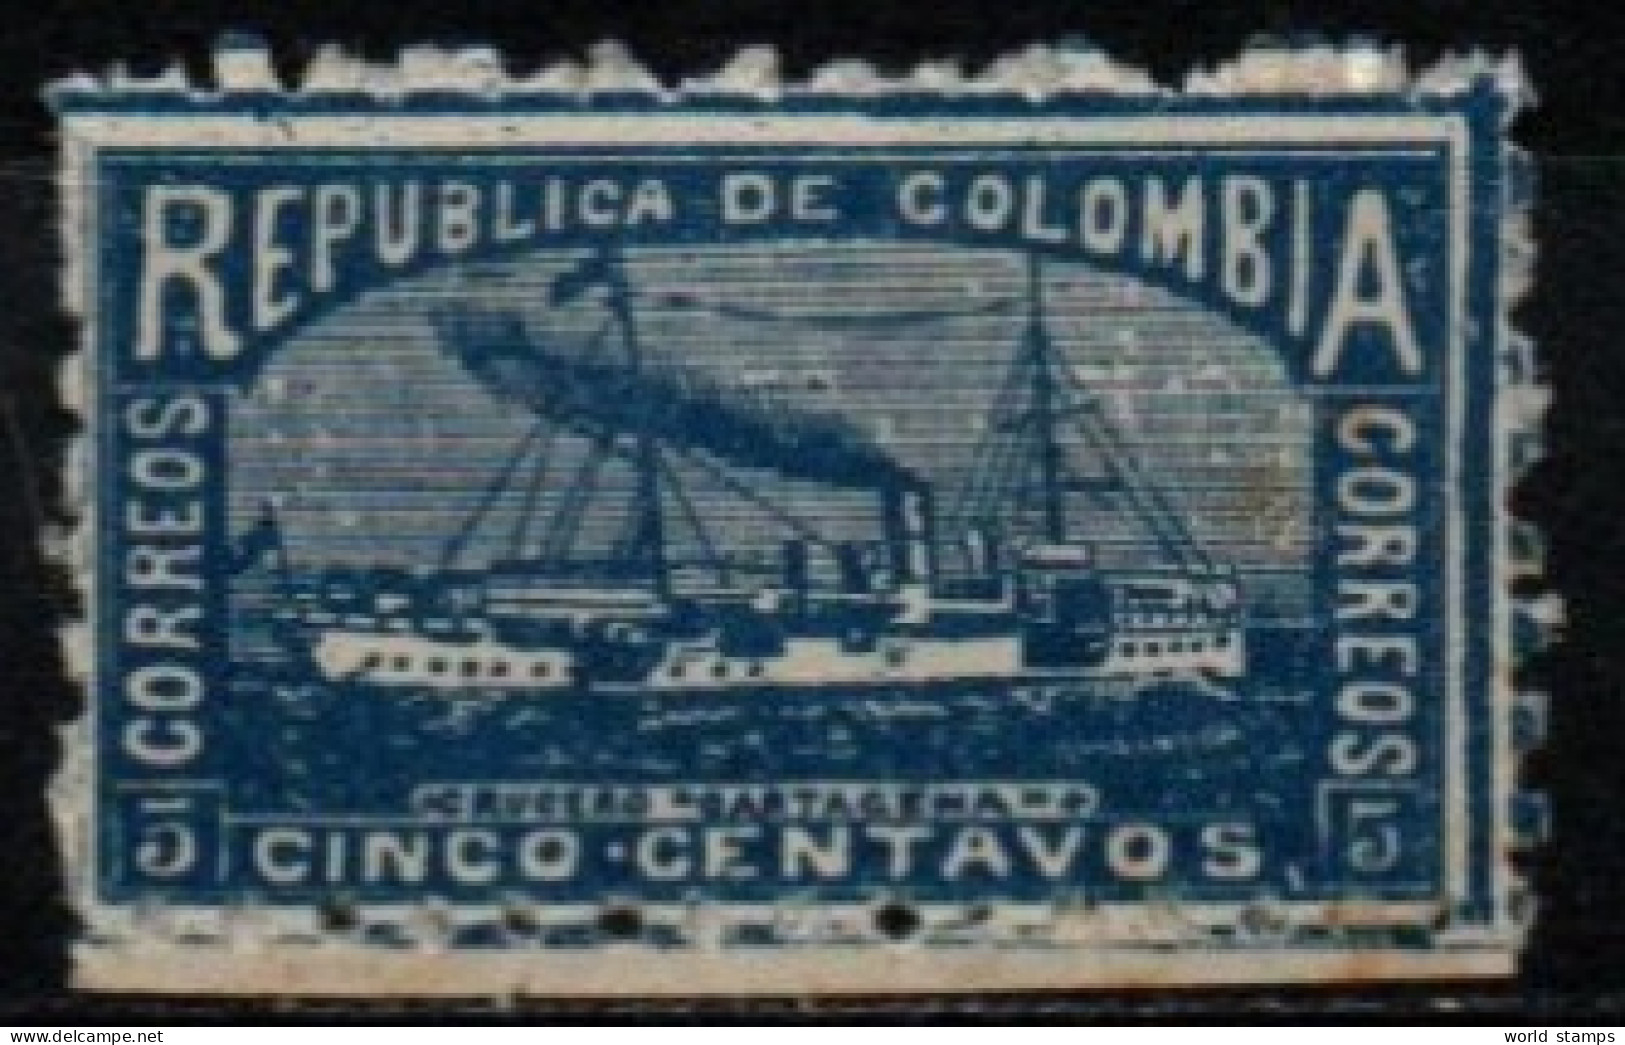 COLOMBIE 1903 * POINTS DE ROUILLE-RUST - Colombie